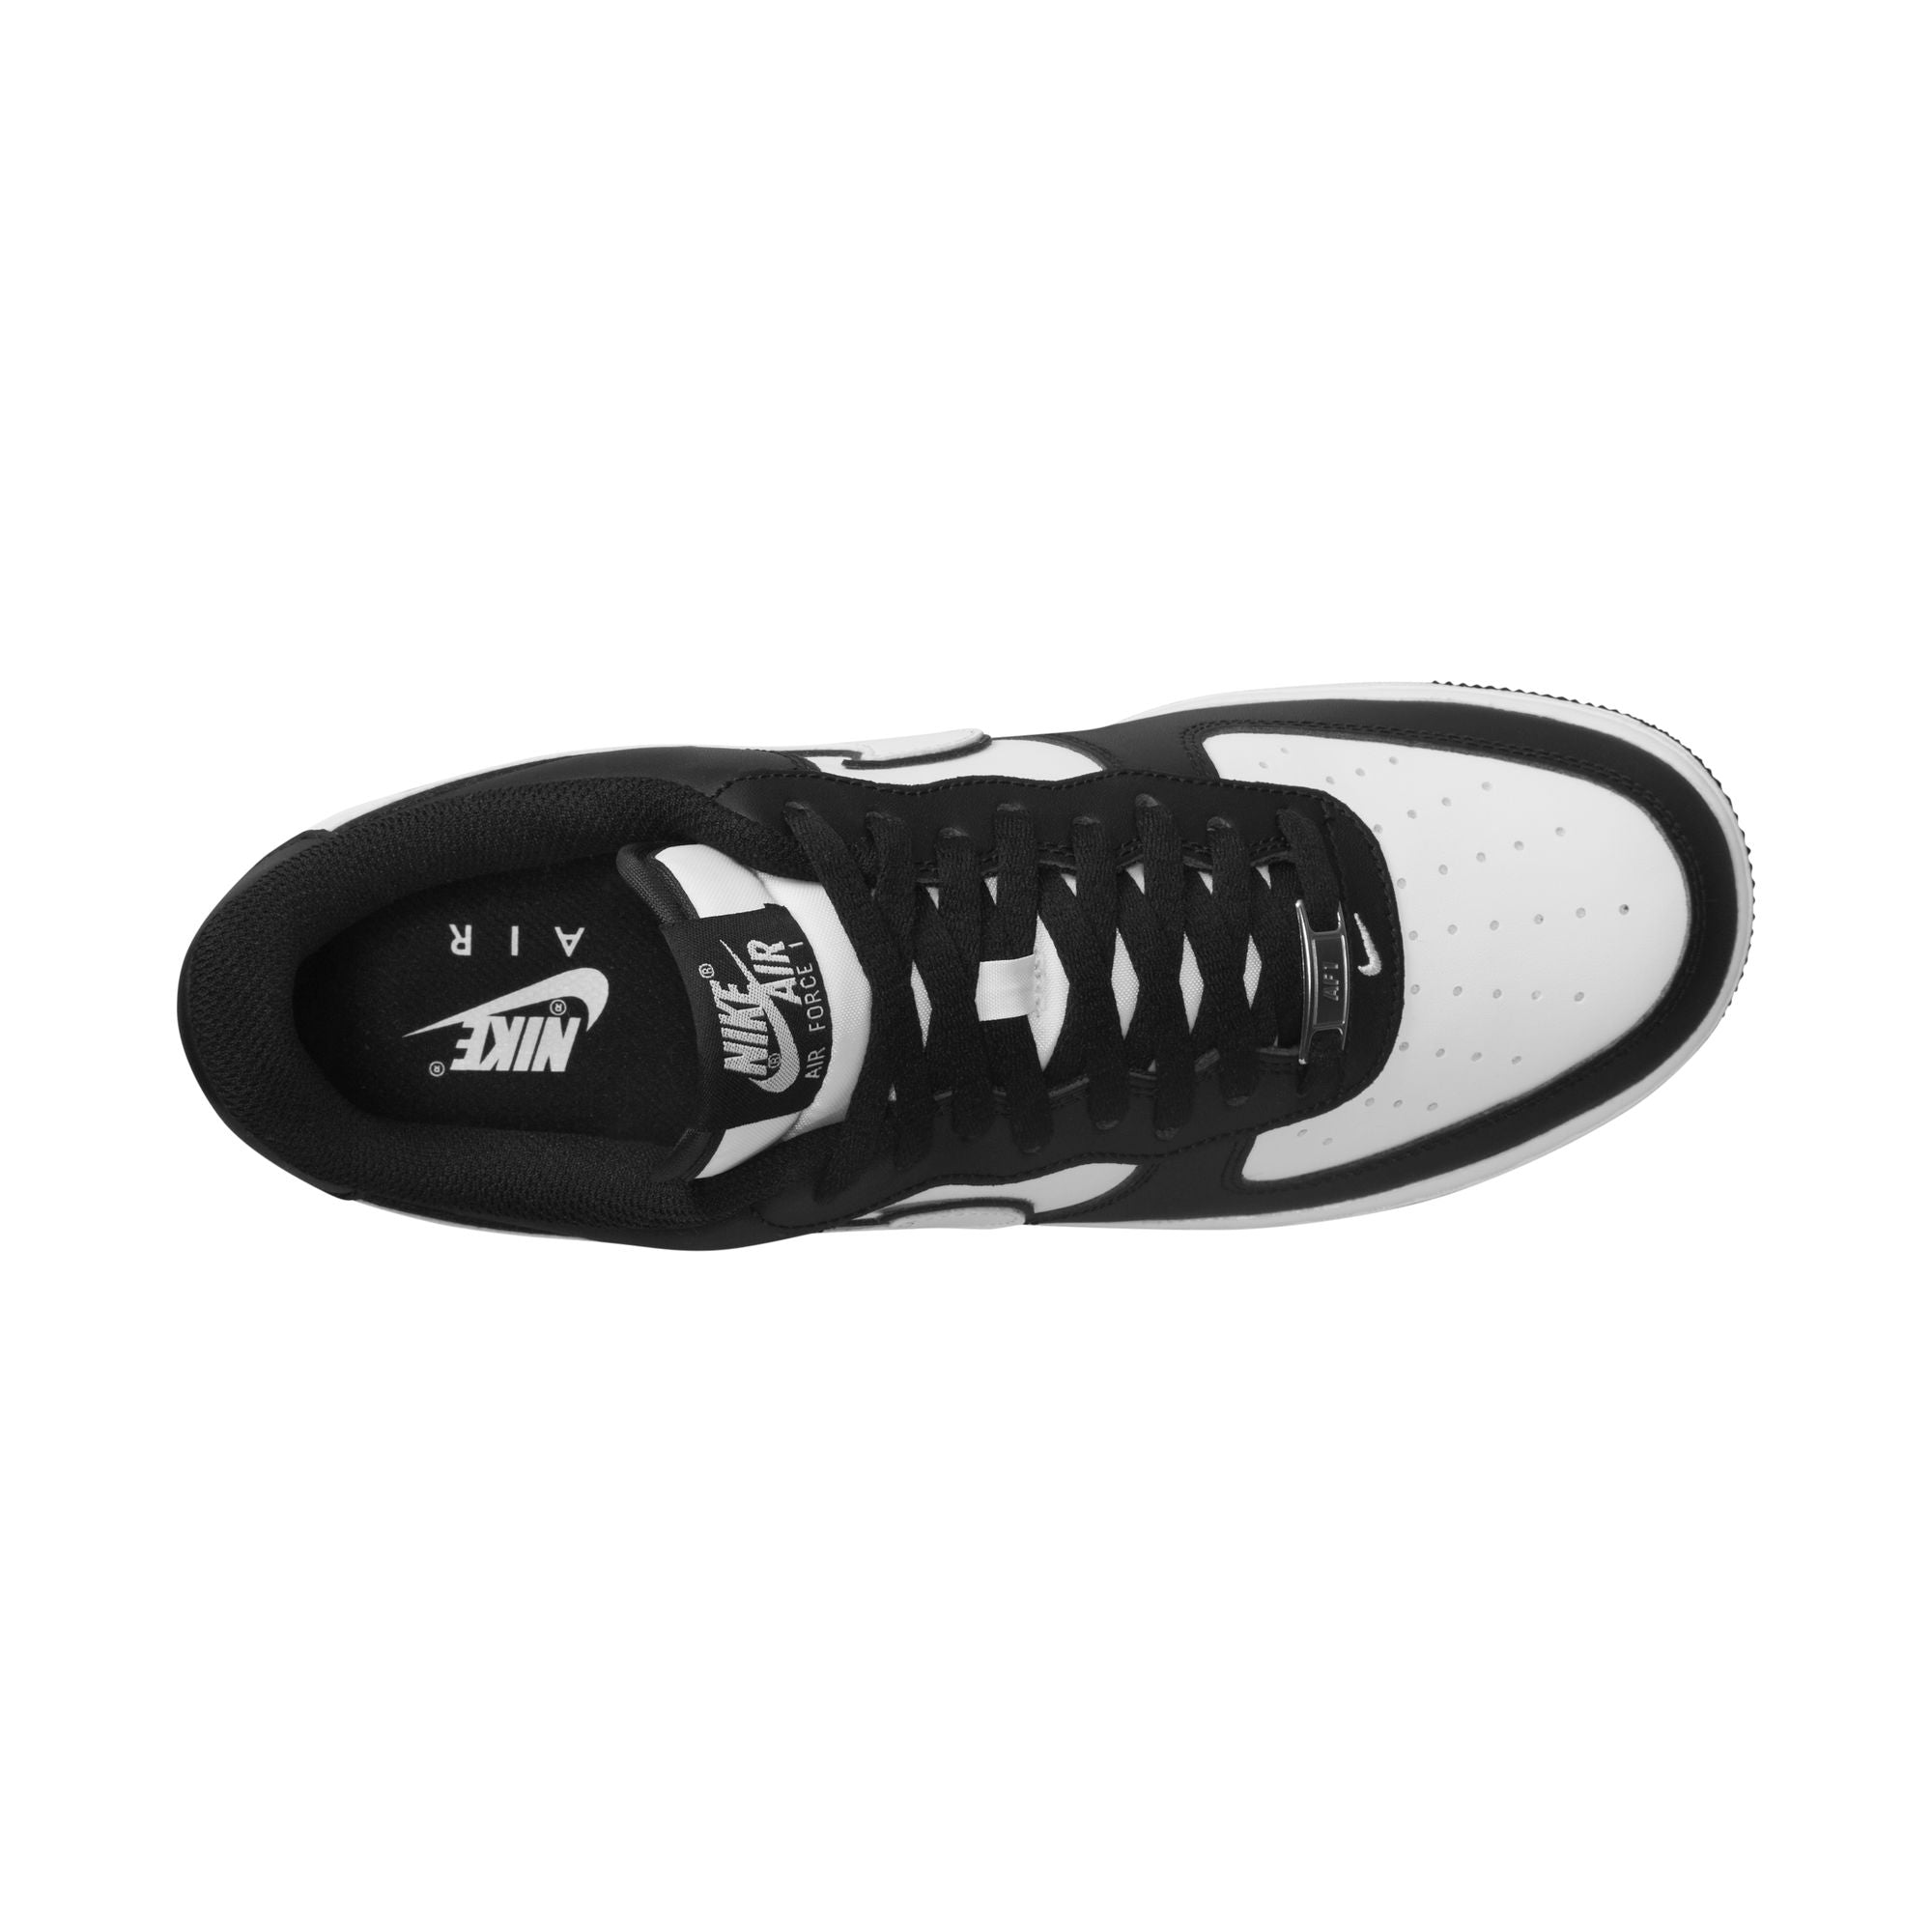 Nike Air Force 1 '07 "Panda" Men's Shoes